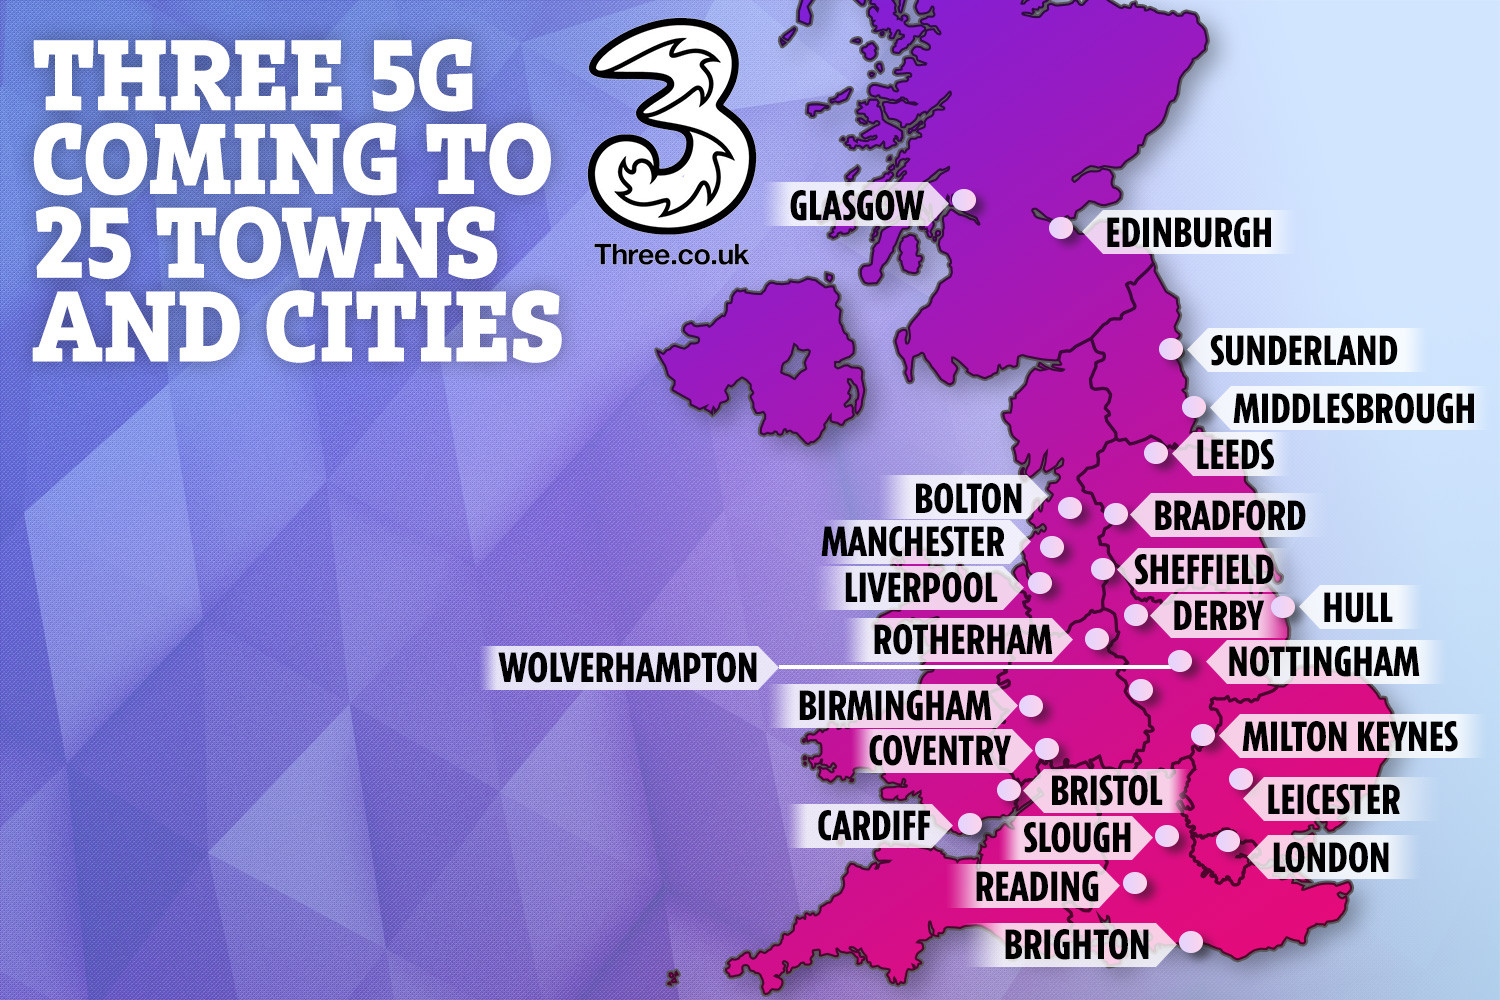     Så många som 25 städer i Storbritannien kommer att ha tillgång till 5G Three-nätverket i slutet av 2019